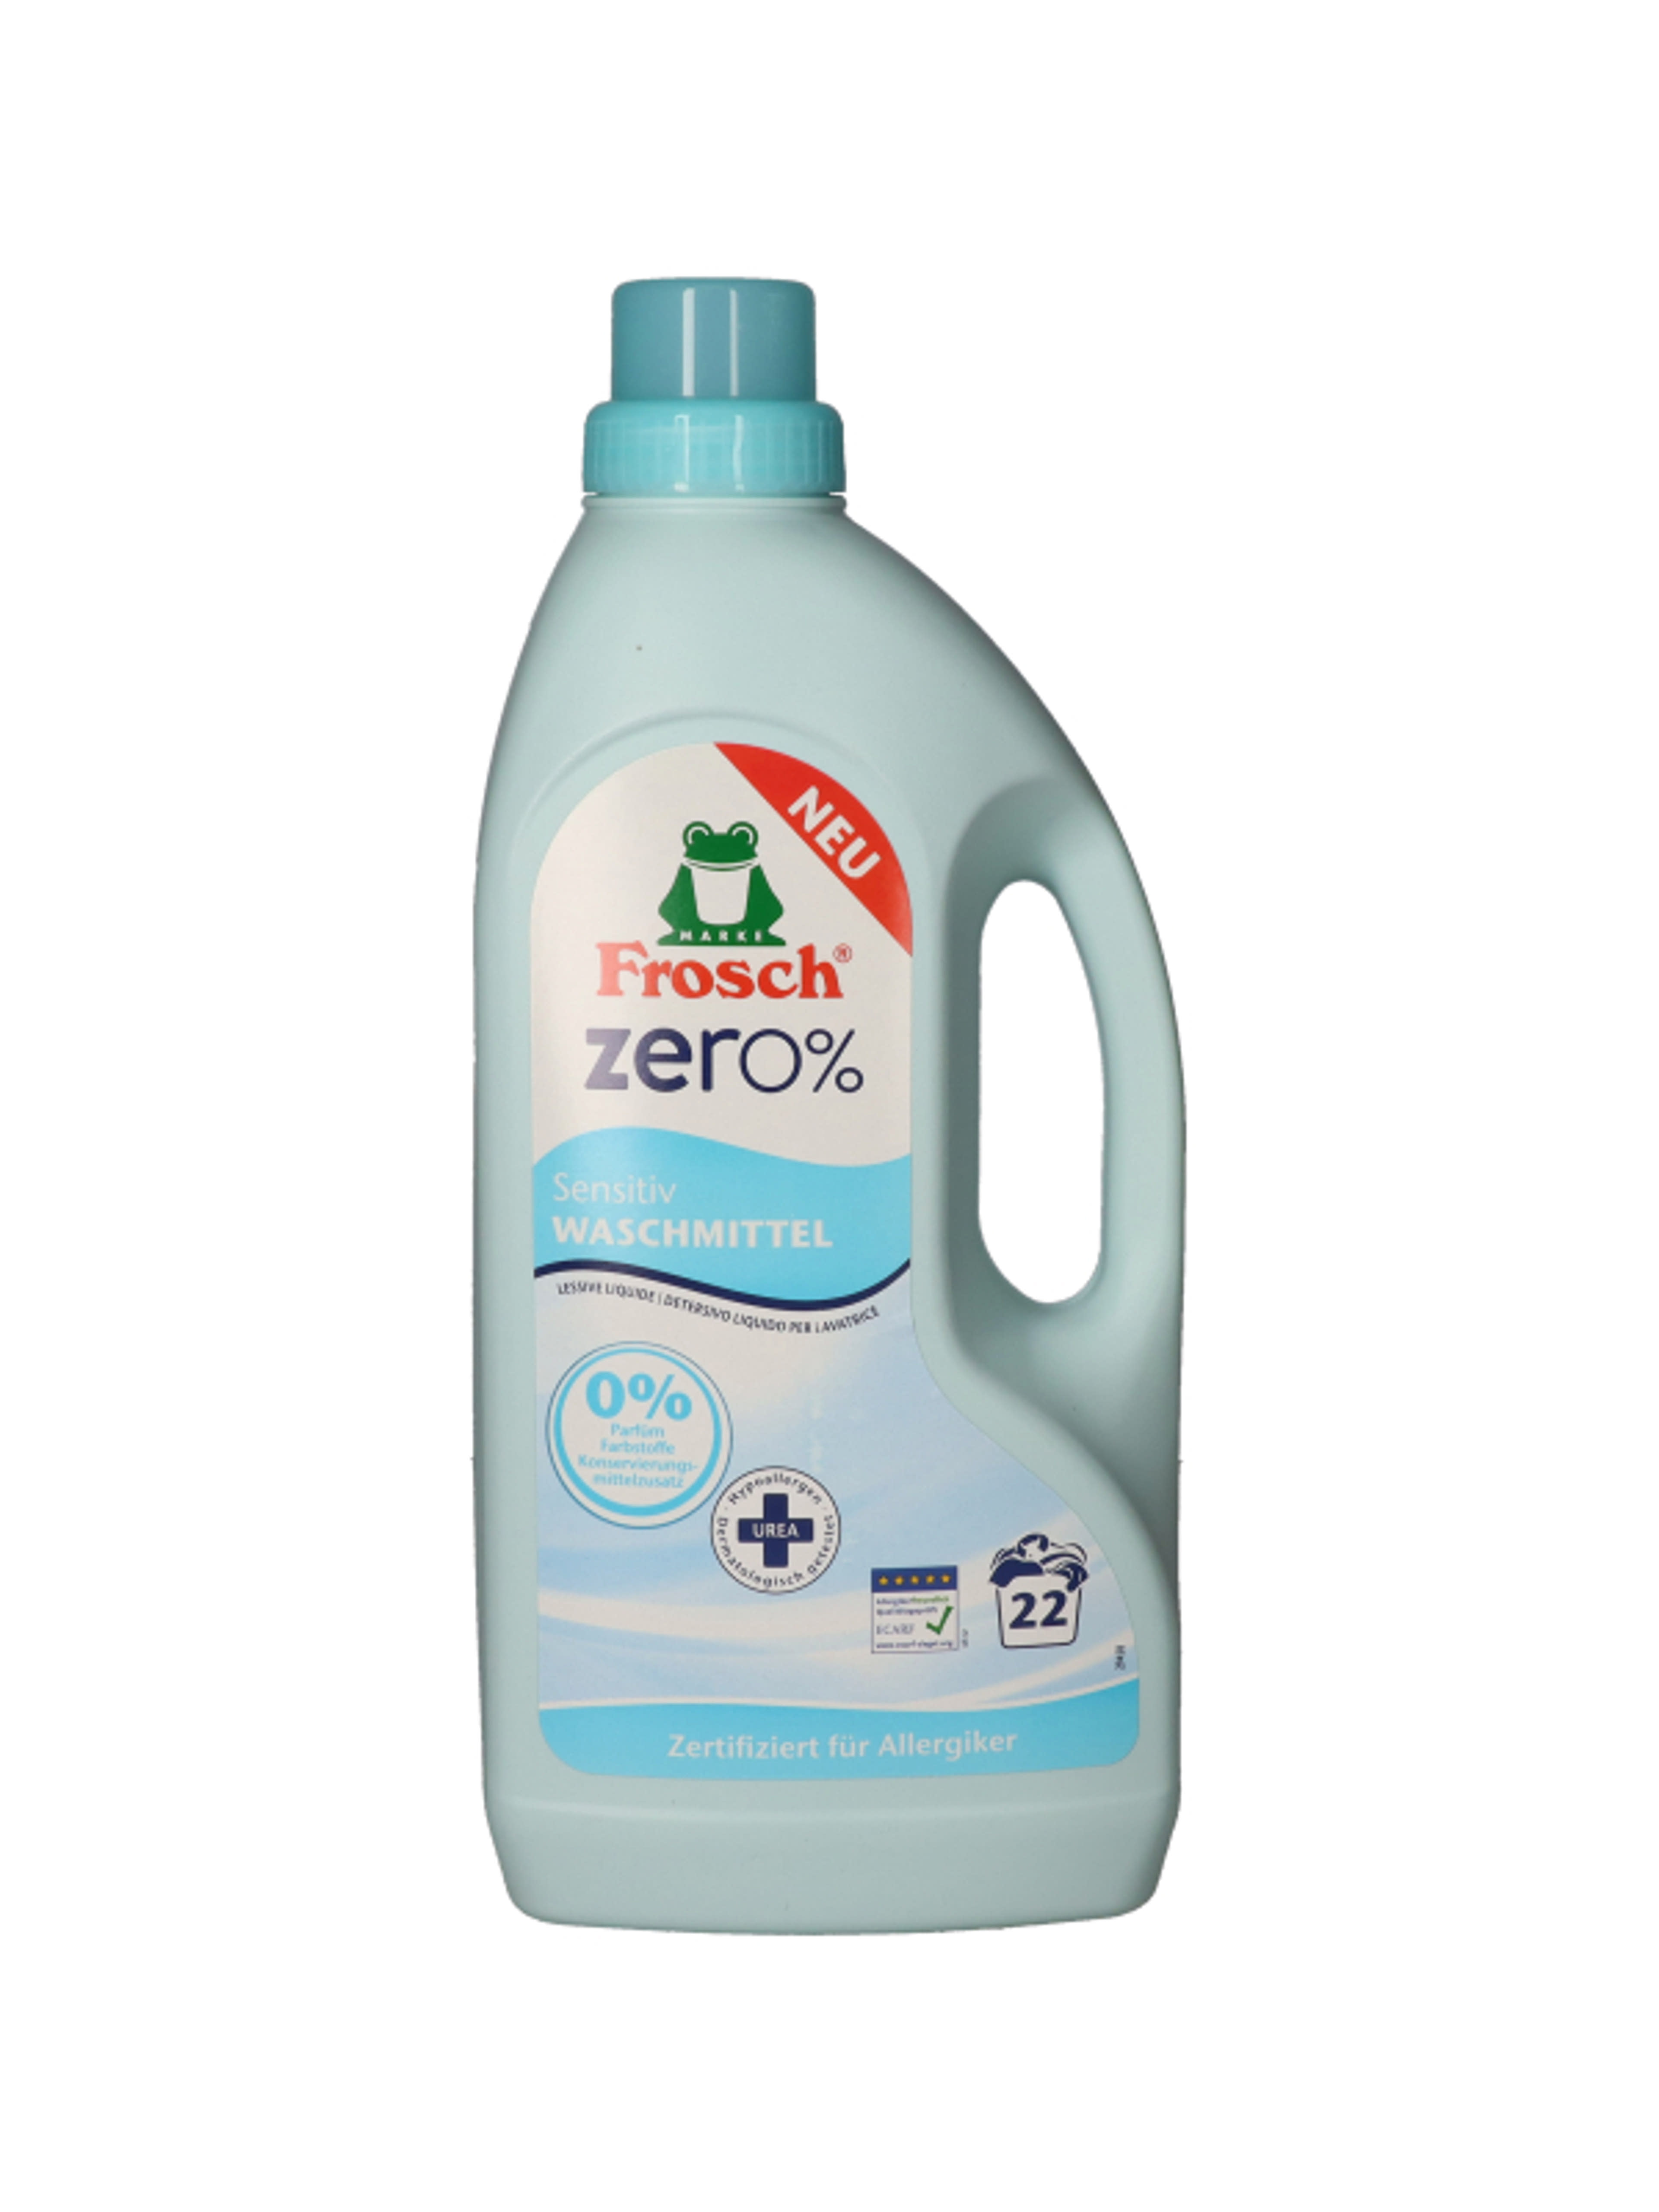 Frosch Zero folyékony mosószer, ureával 22 mosás - 1500 ml